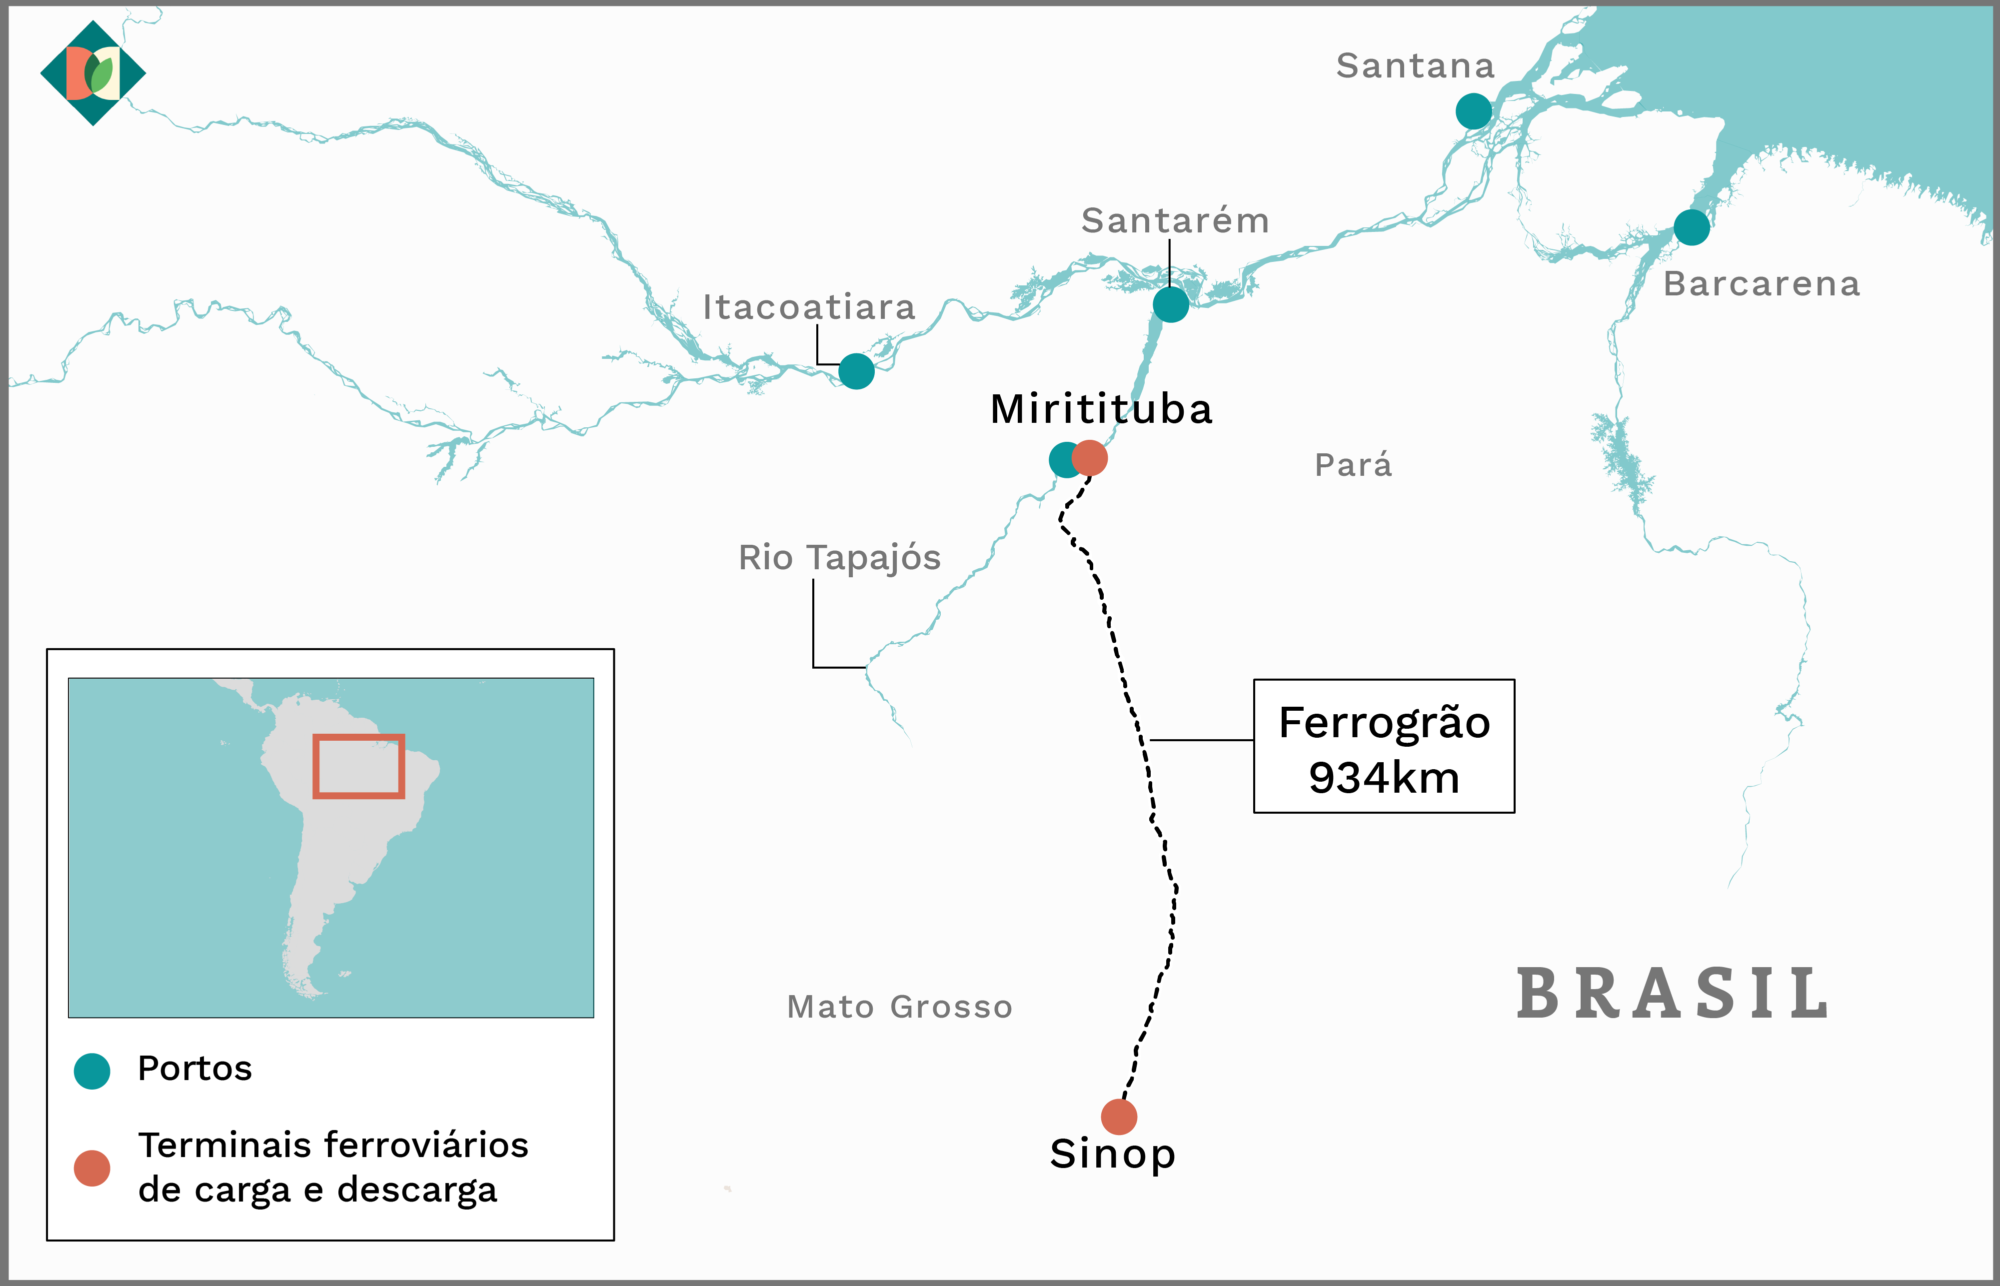 Mapa mostrando a rota de Ferrogrão